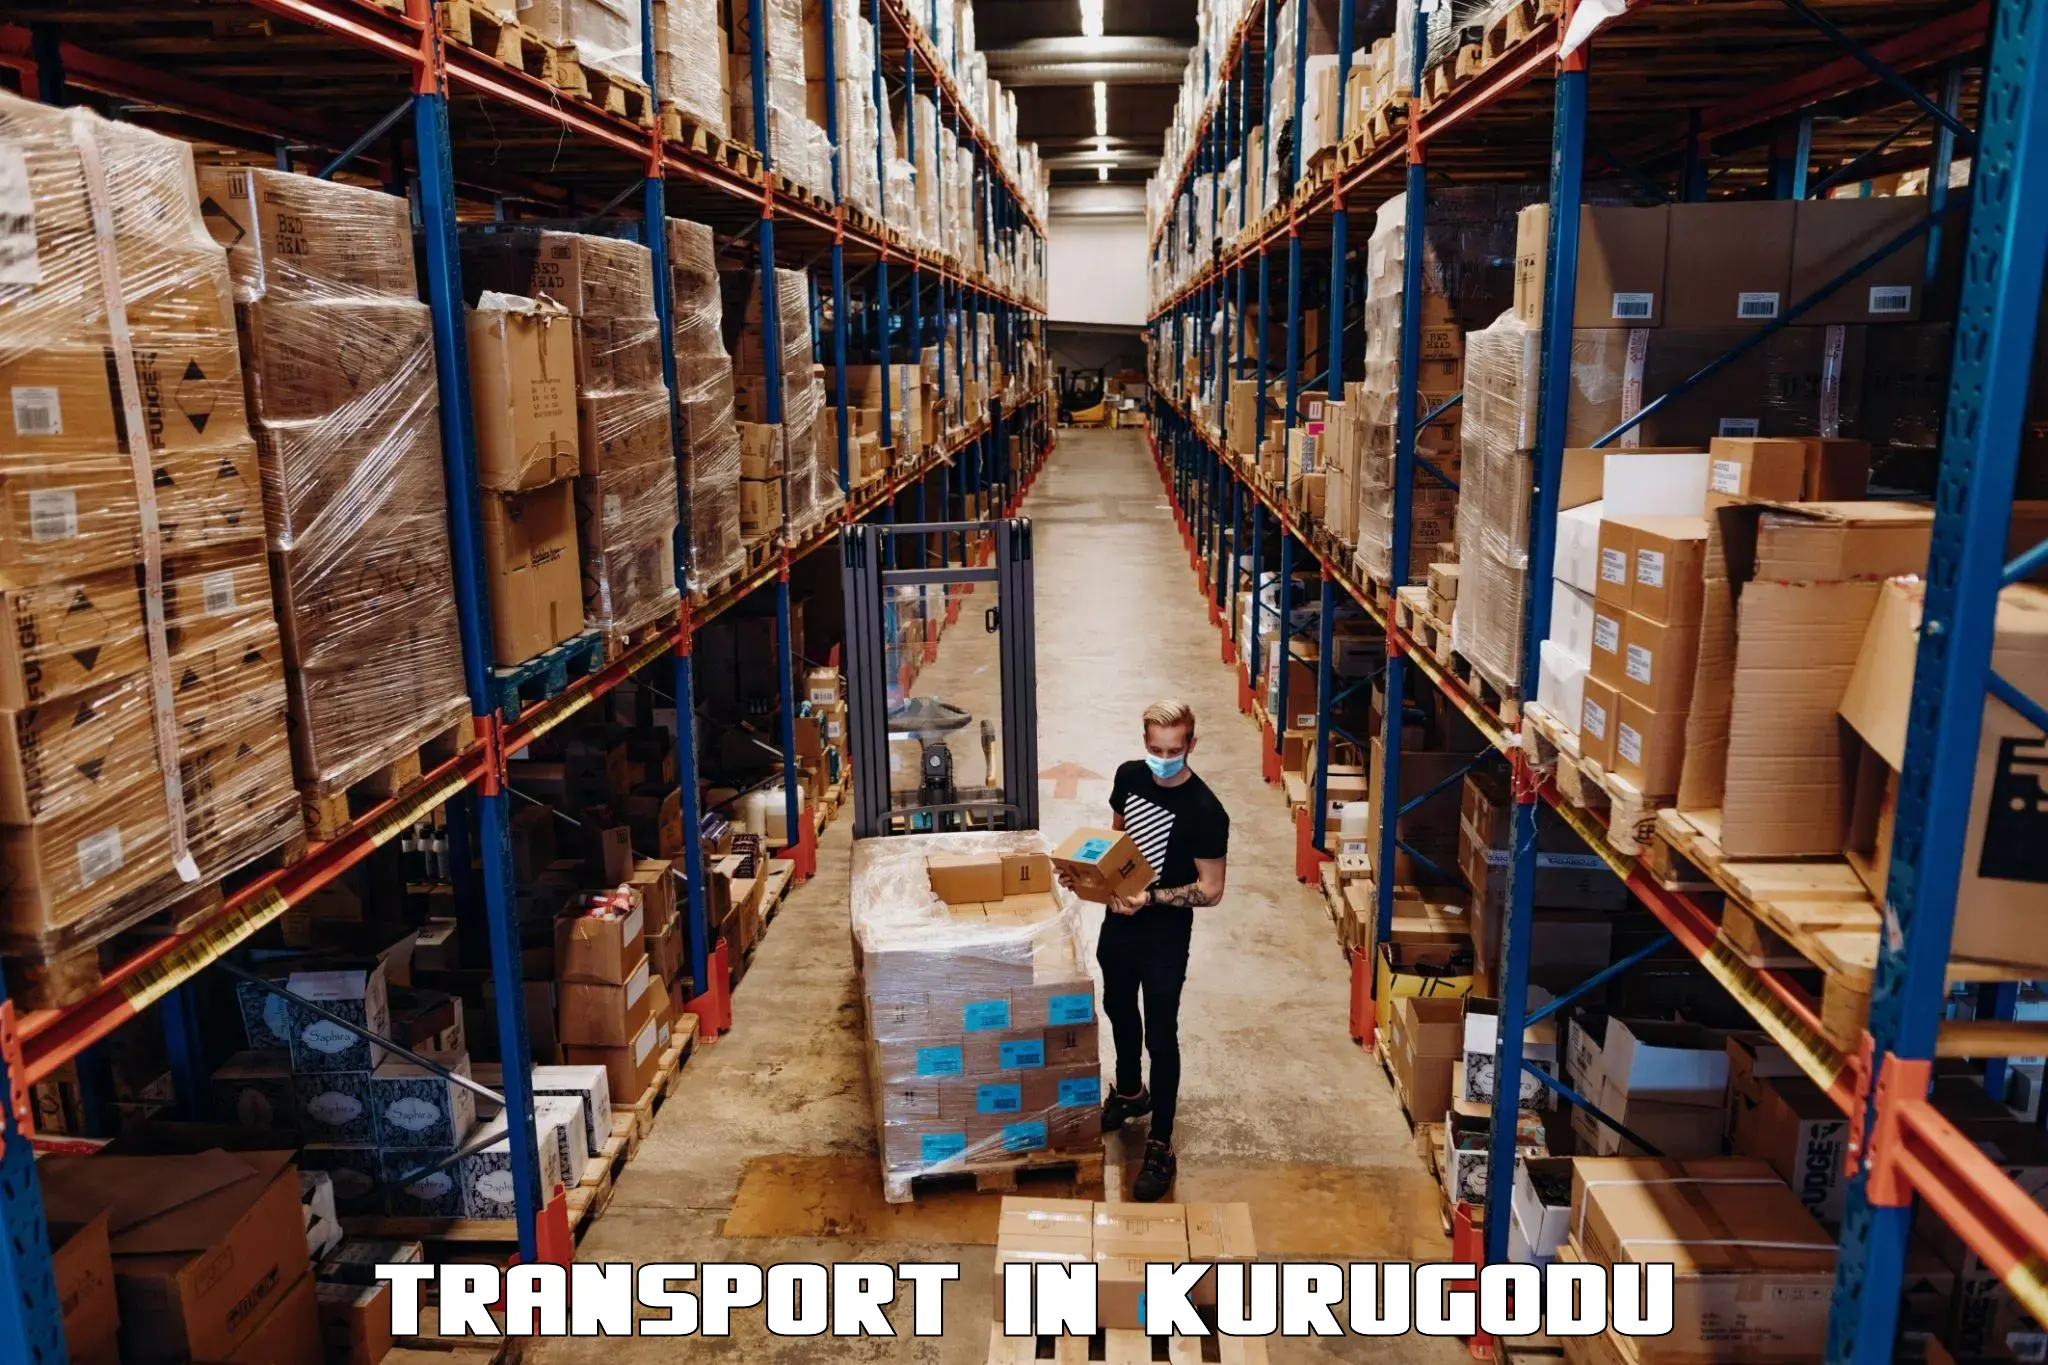 Cargo transportation services in Kurugodu